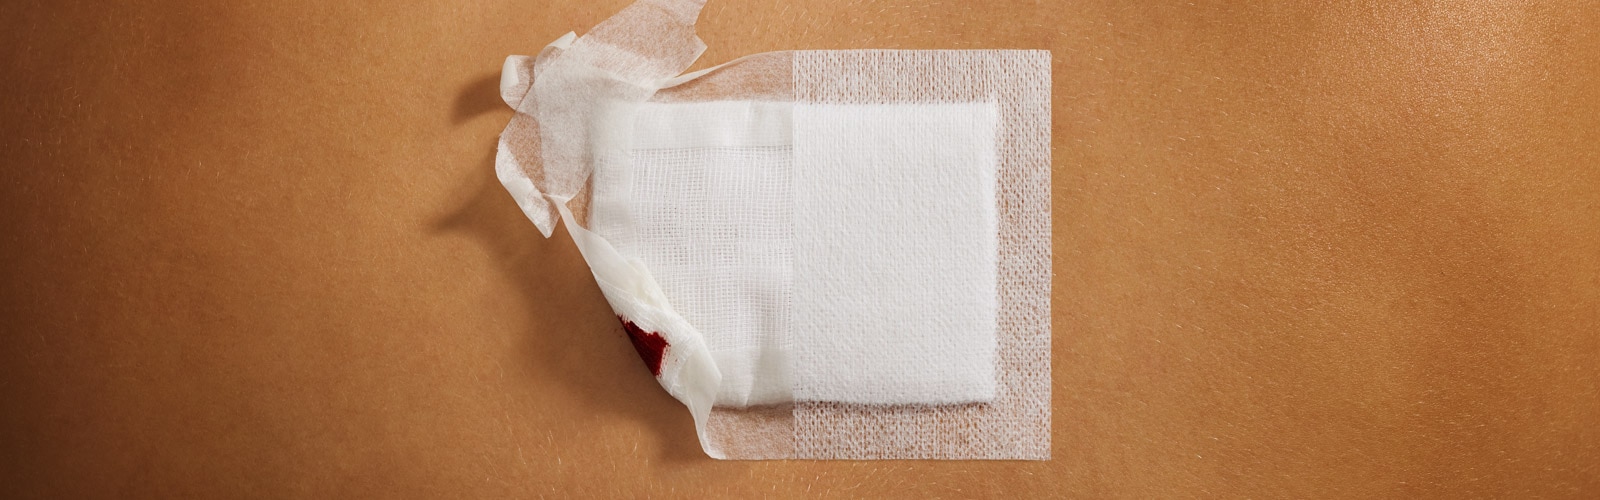 Primer plano comparando los resultados en la piel a lo largo del tiempo del esparadrapo quirúrgico con el parche adhesivo para heridas en zonas amplias.